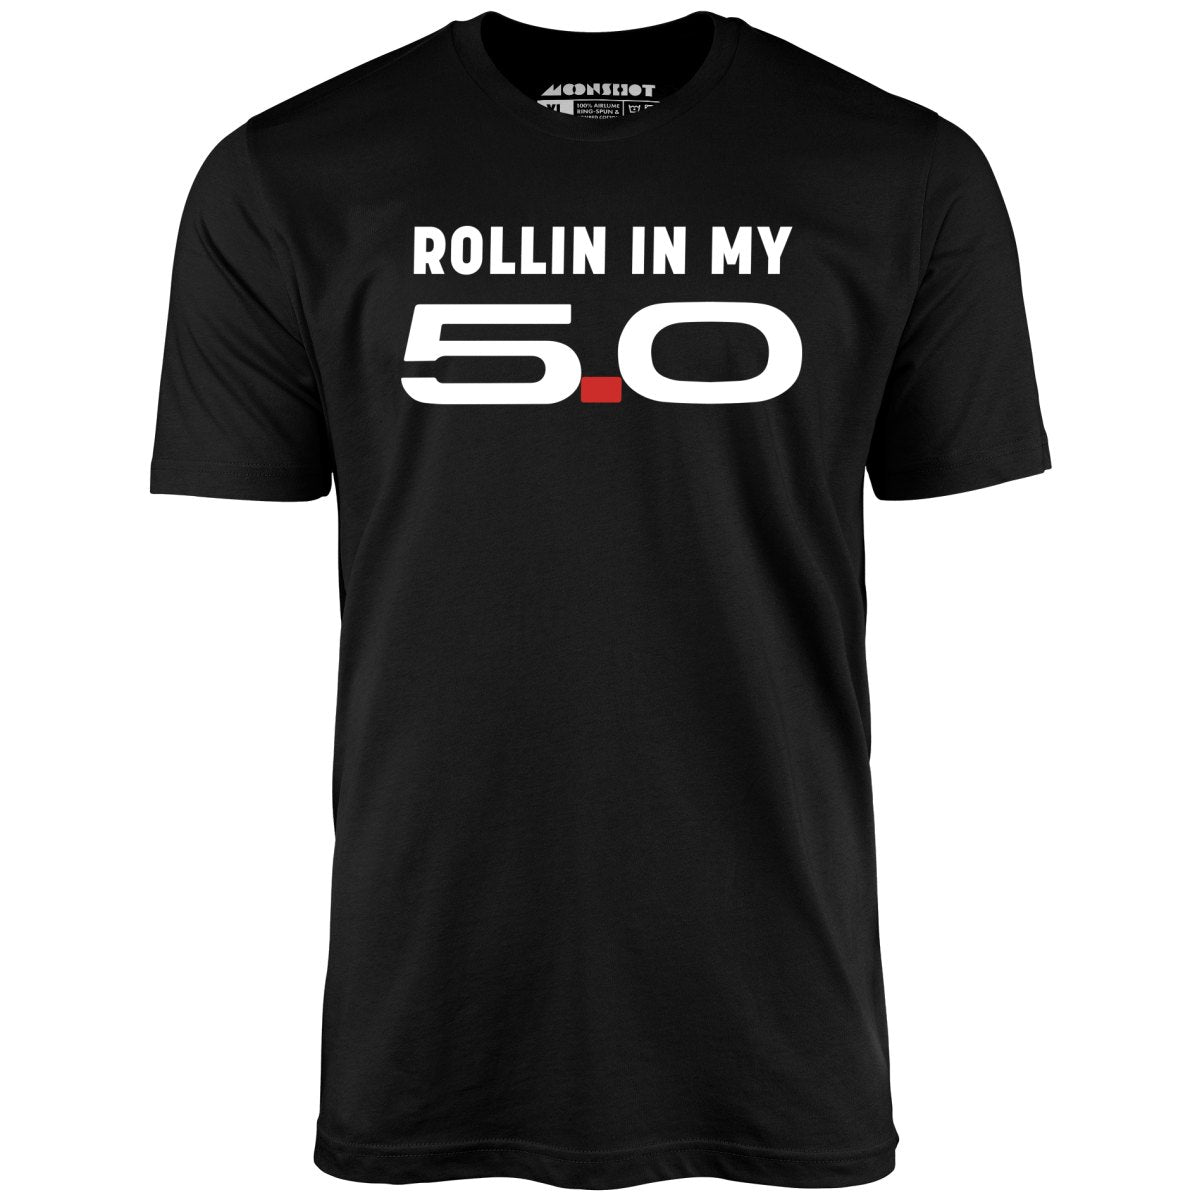 Rollin in my 5.0 - Unisex T-Shirt